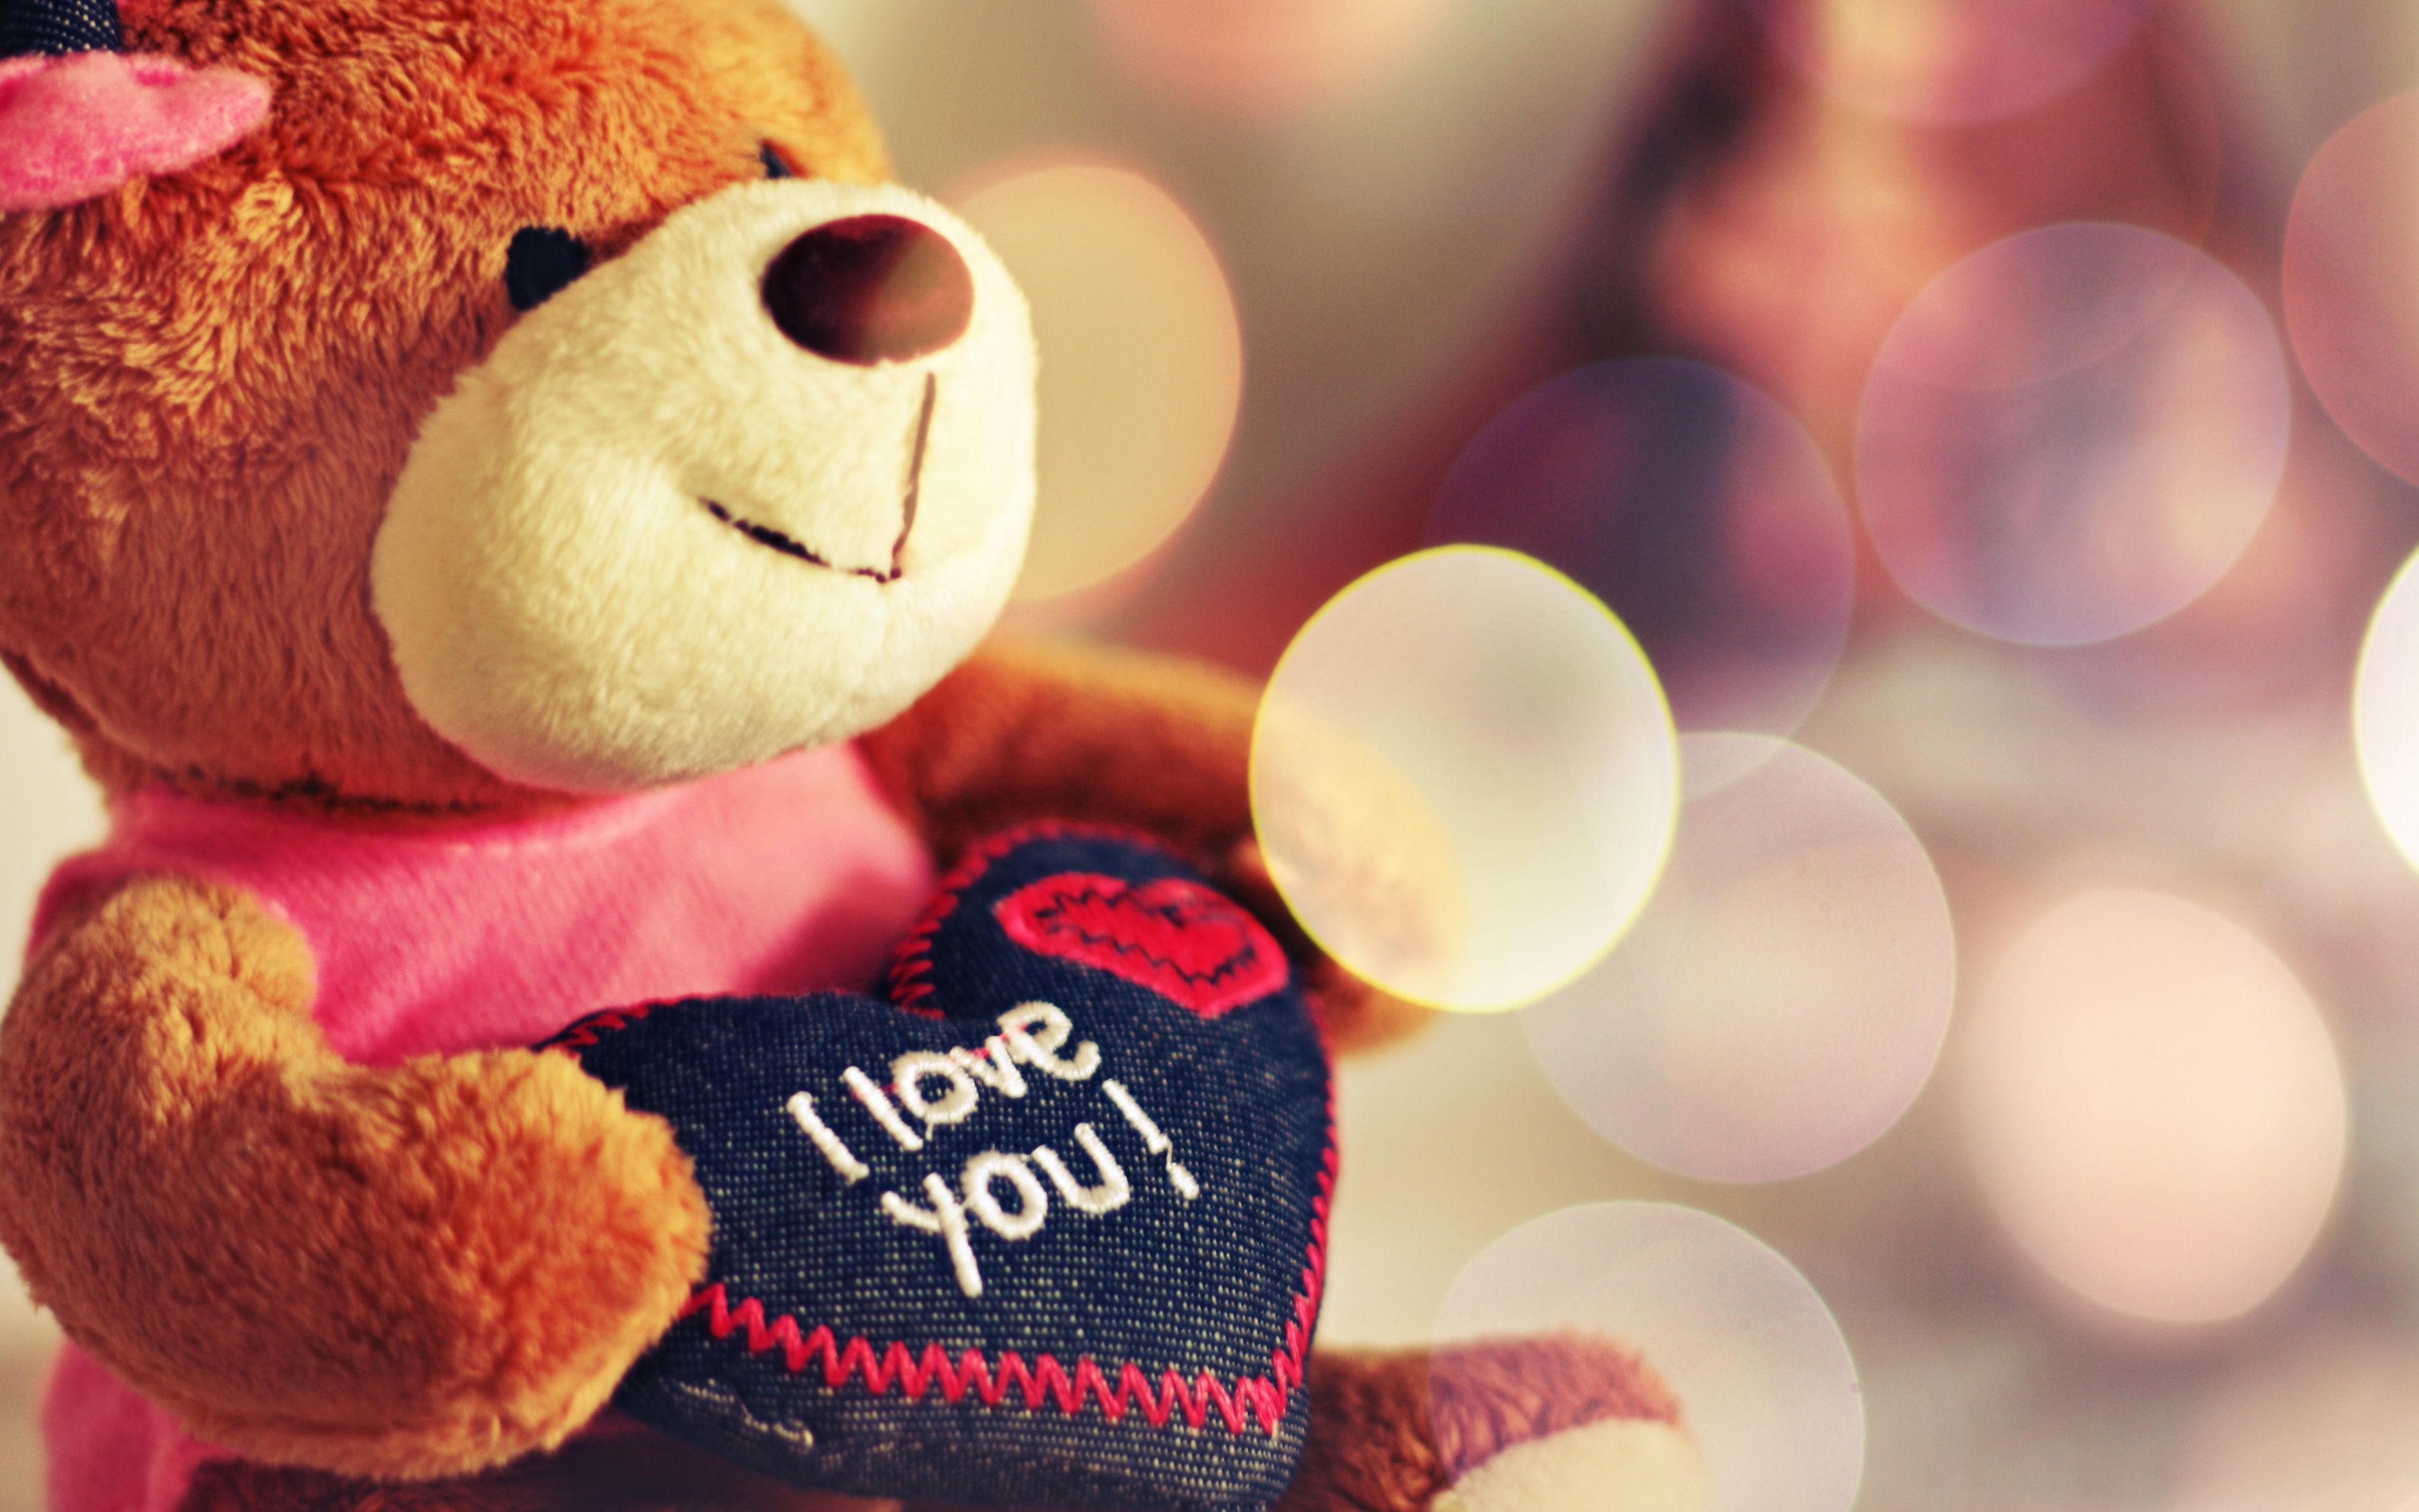 I Love You Teddy Bear7210613699 - I Love You Teddy Bear - Teddy, Season, Love, Bear